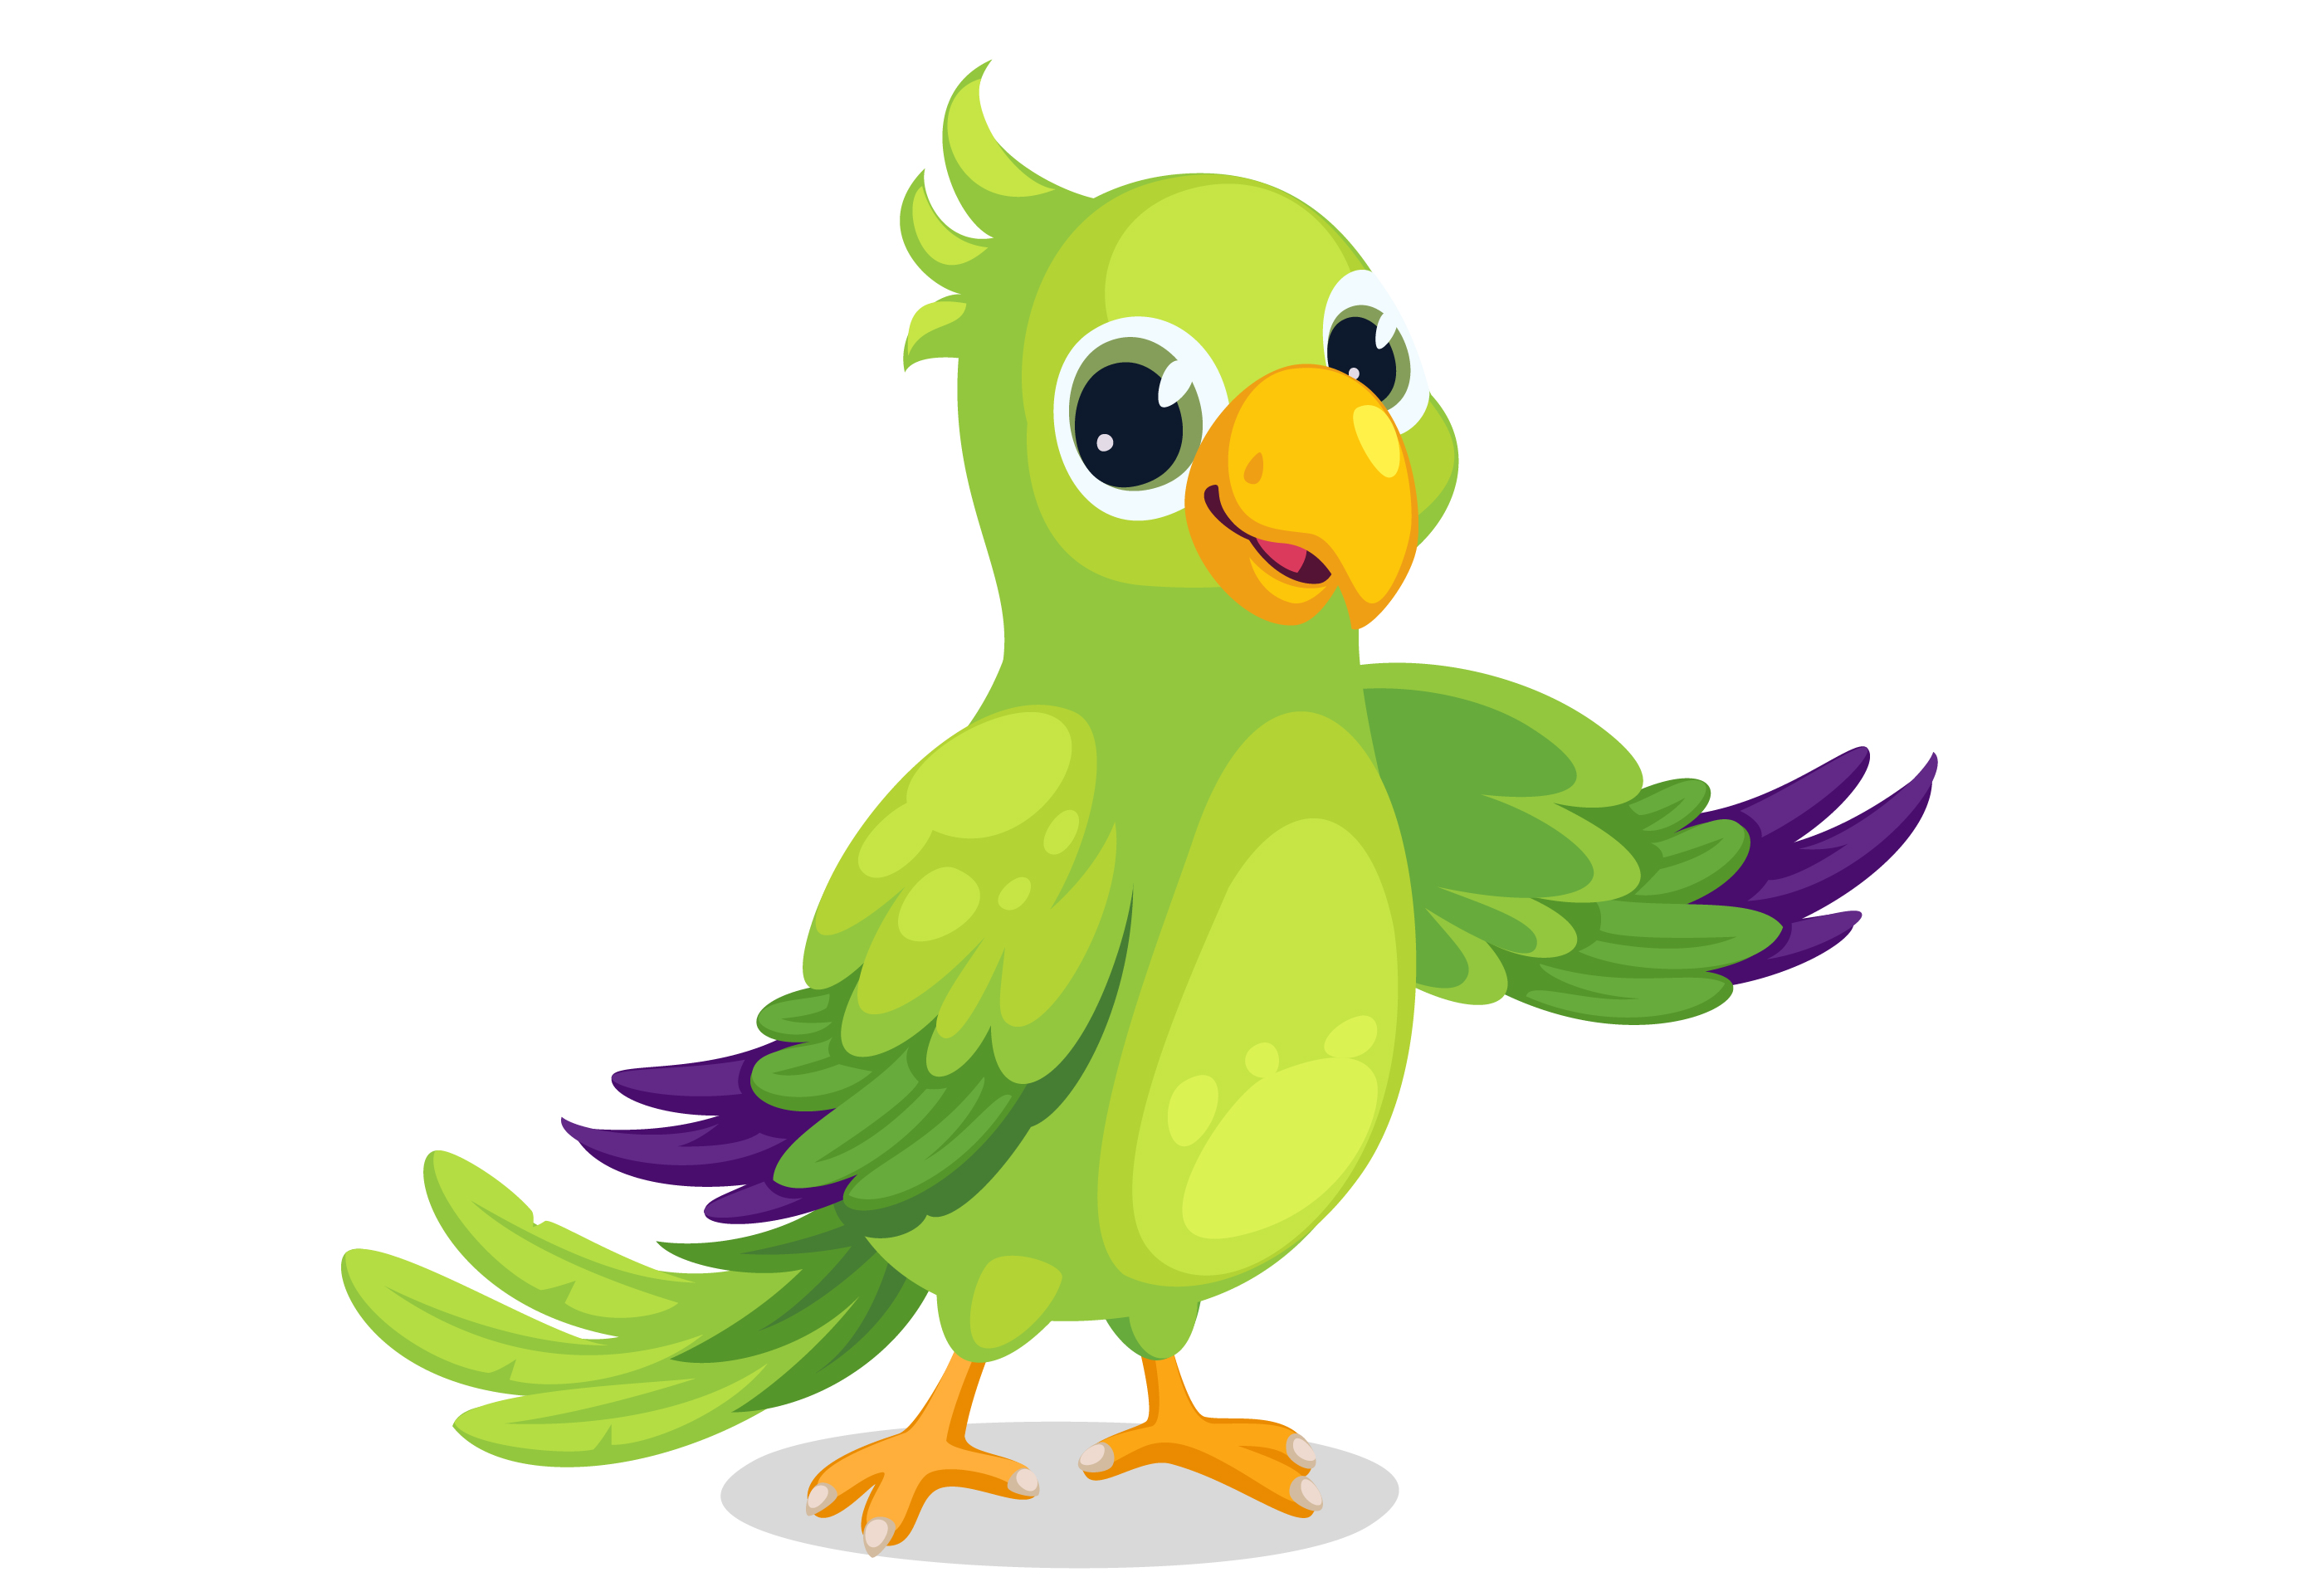 Parrot cartoon vector 619252 - Download Free Vectors, Clipart Graphics & Vector Art